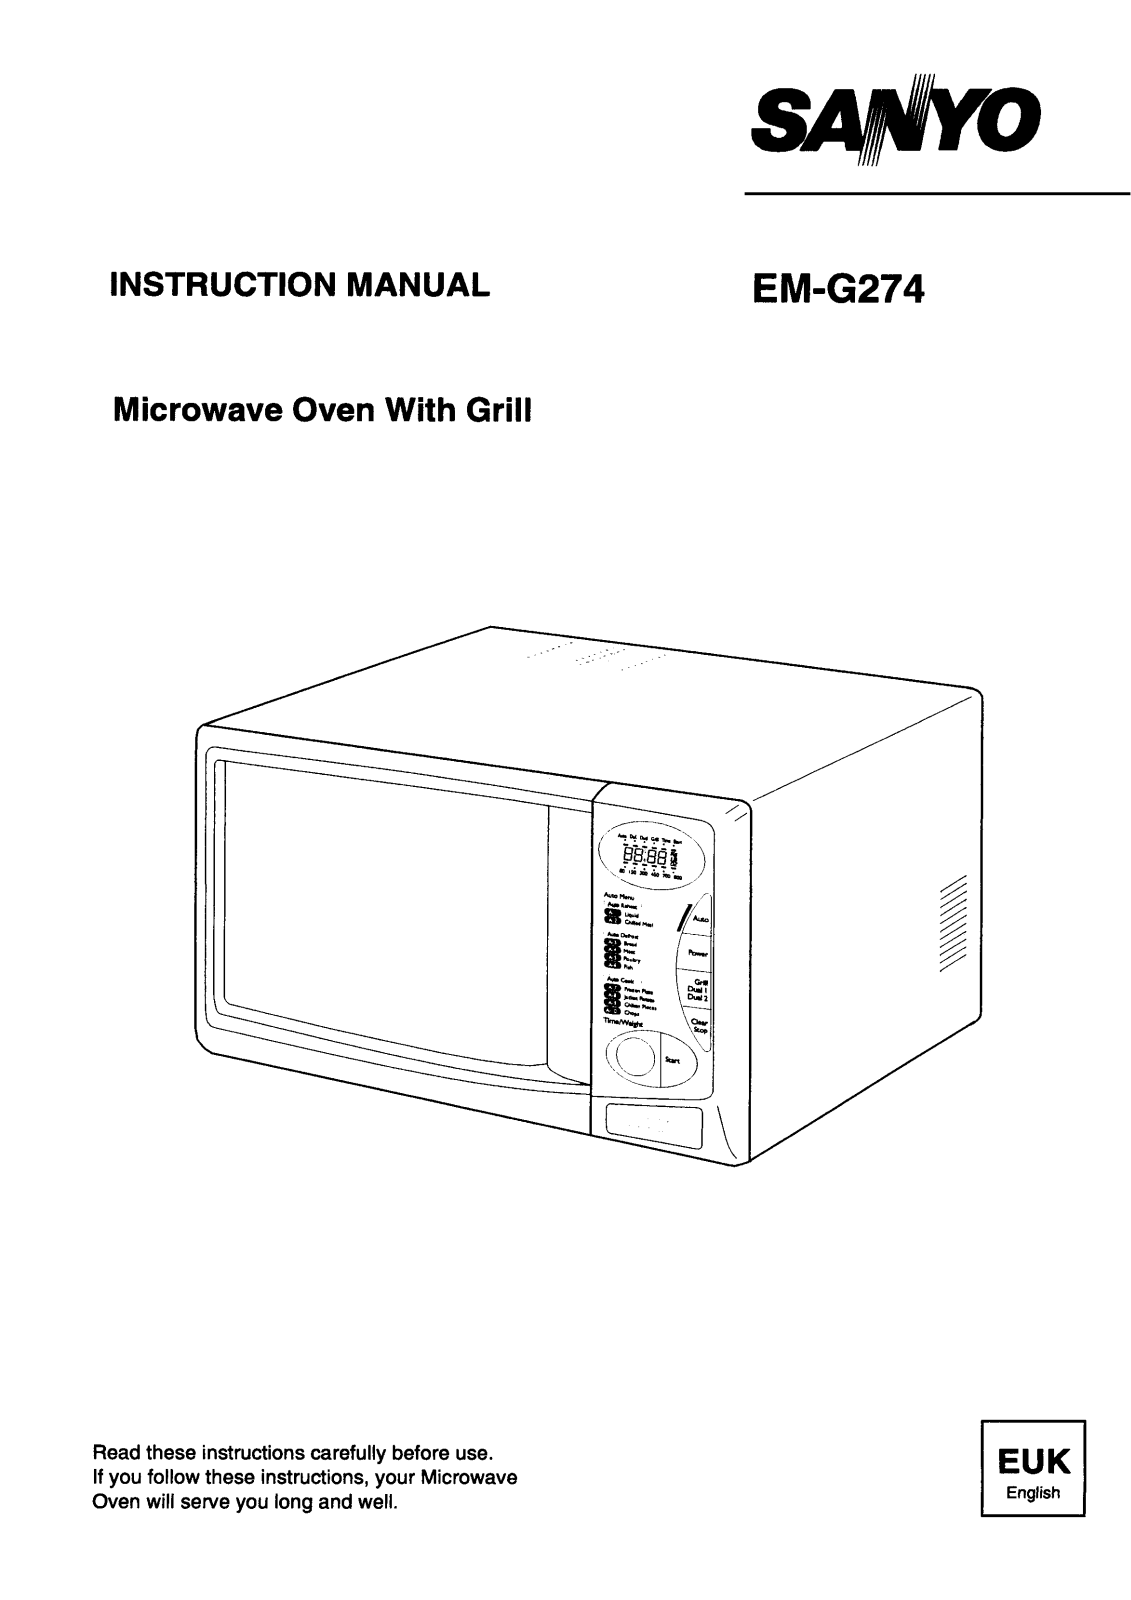 Sanyo EM-G274 Instruction Manual